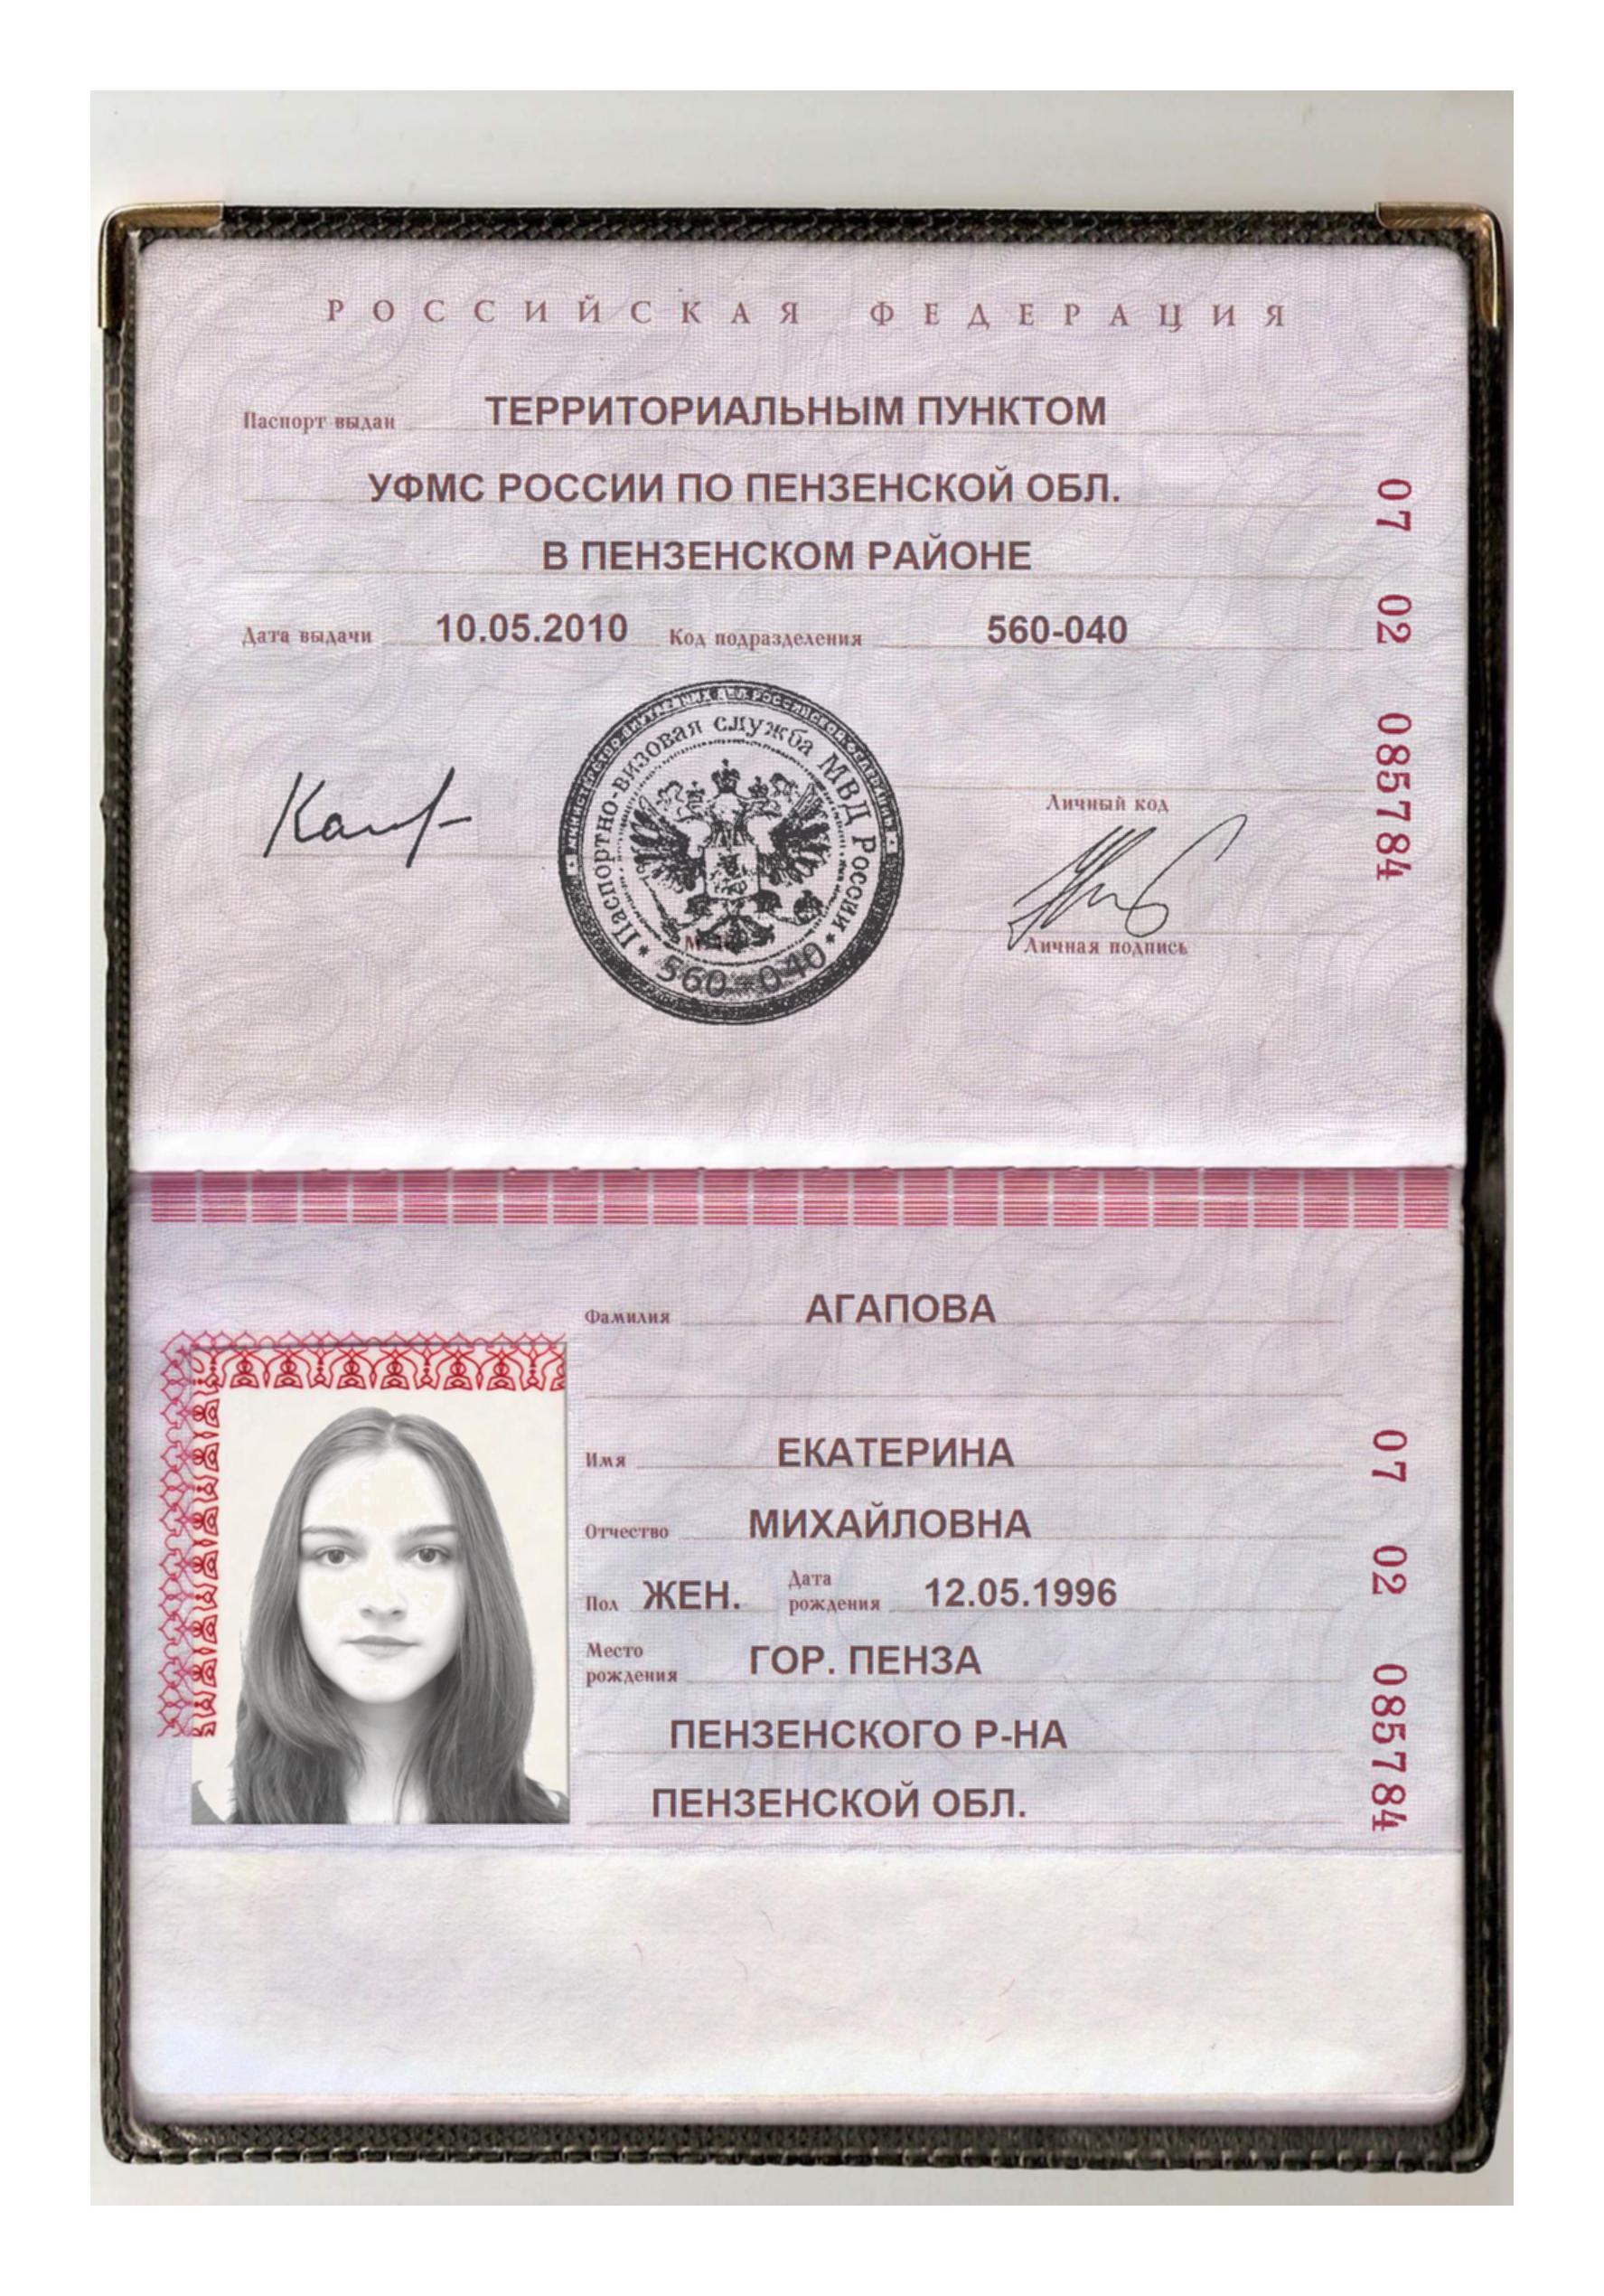 Что можно сделать по фотографии паспорта